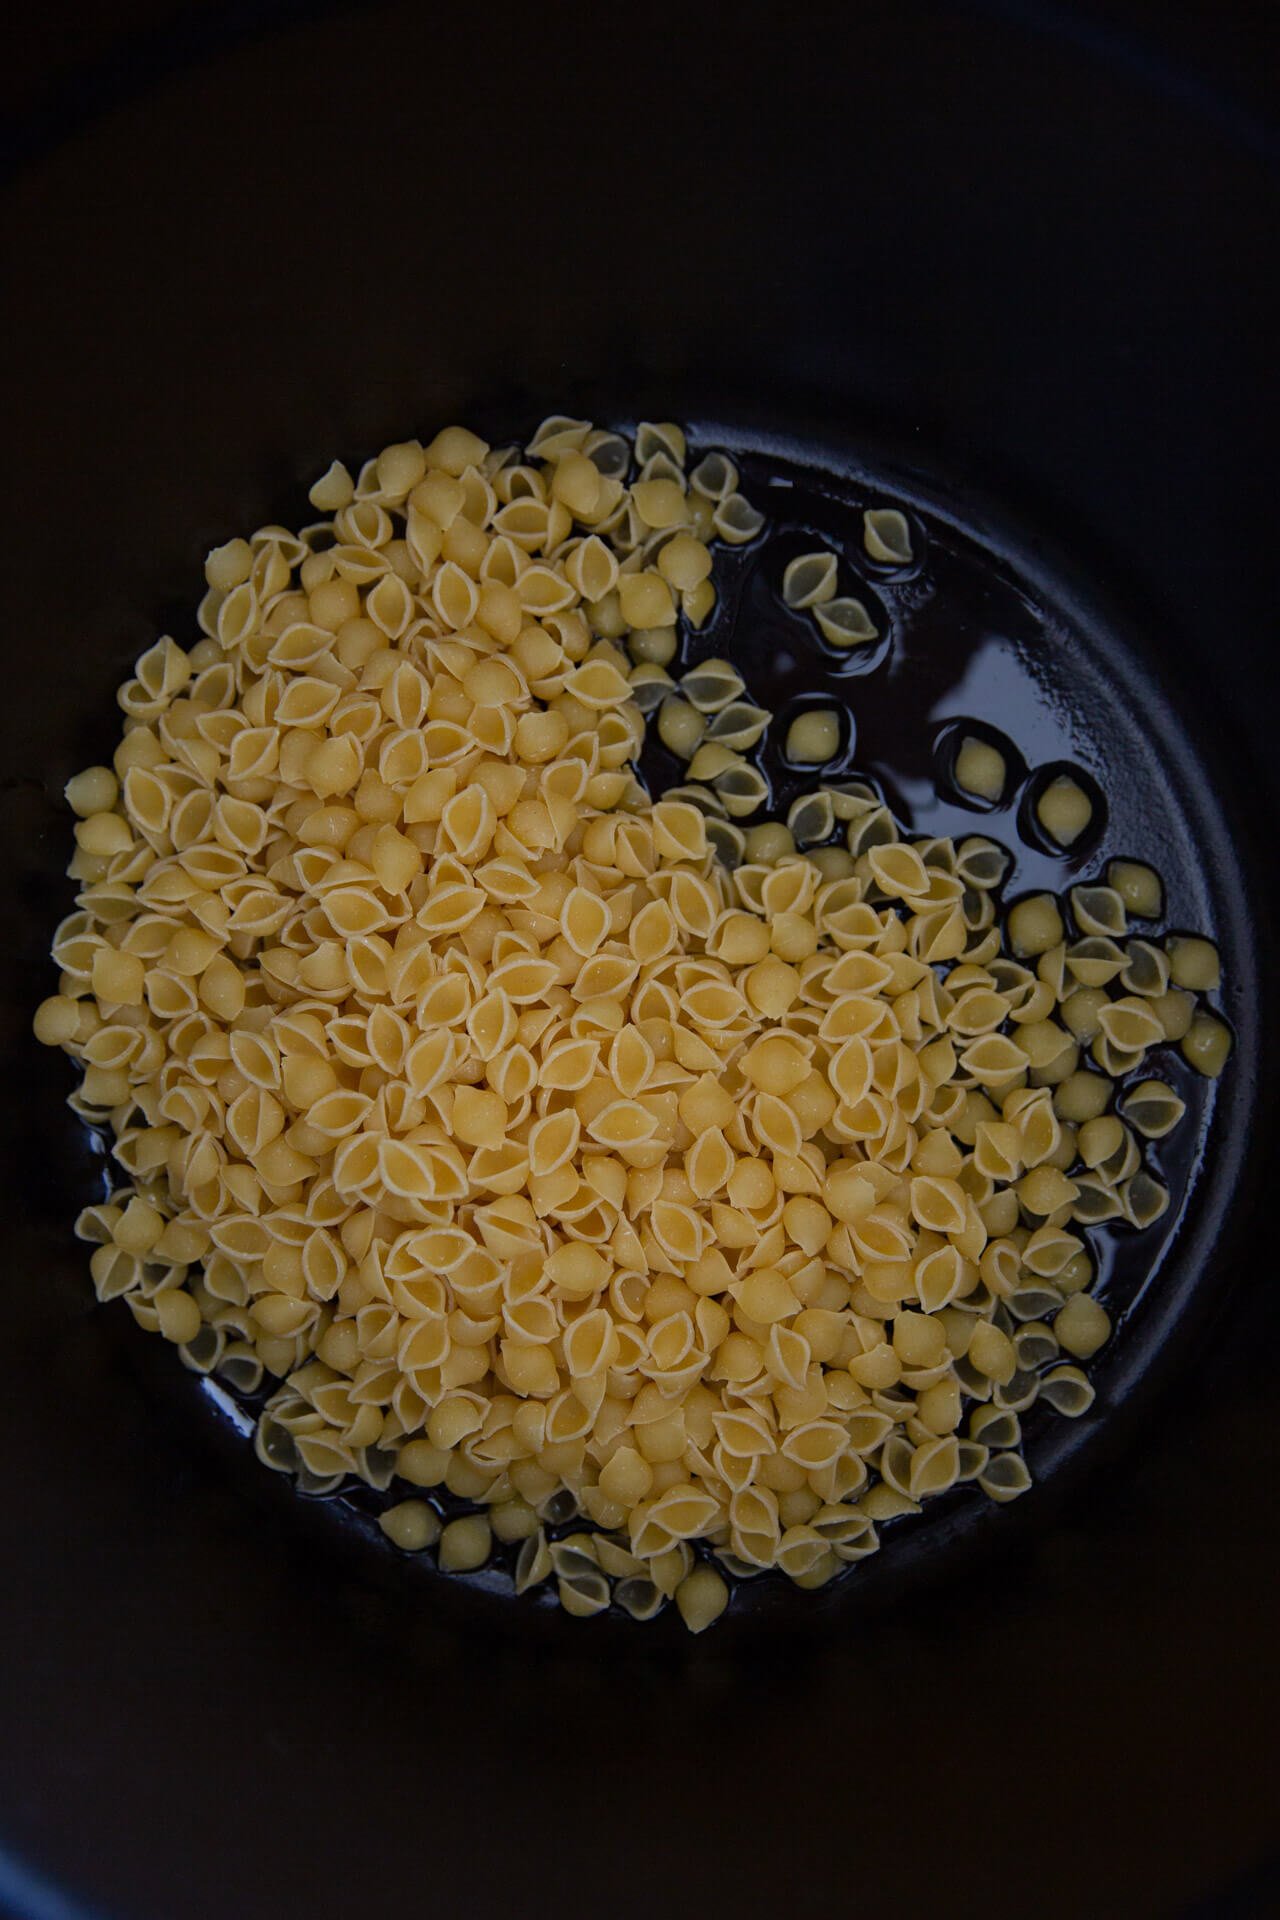 pasta shells in a a pot